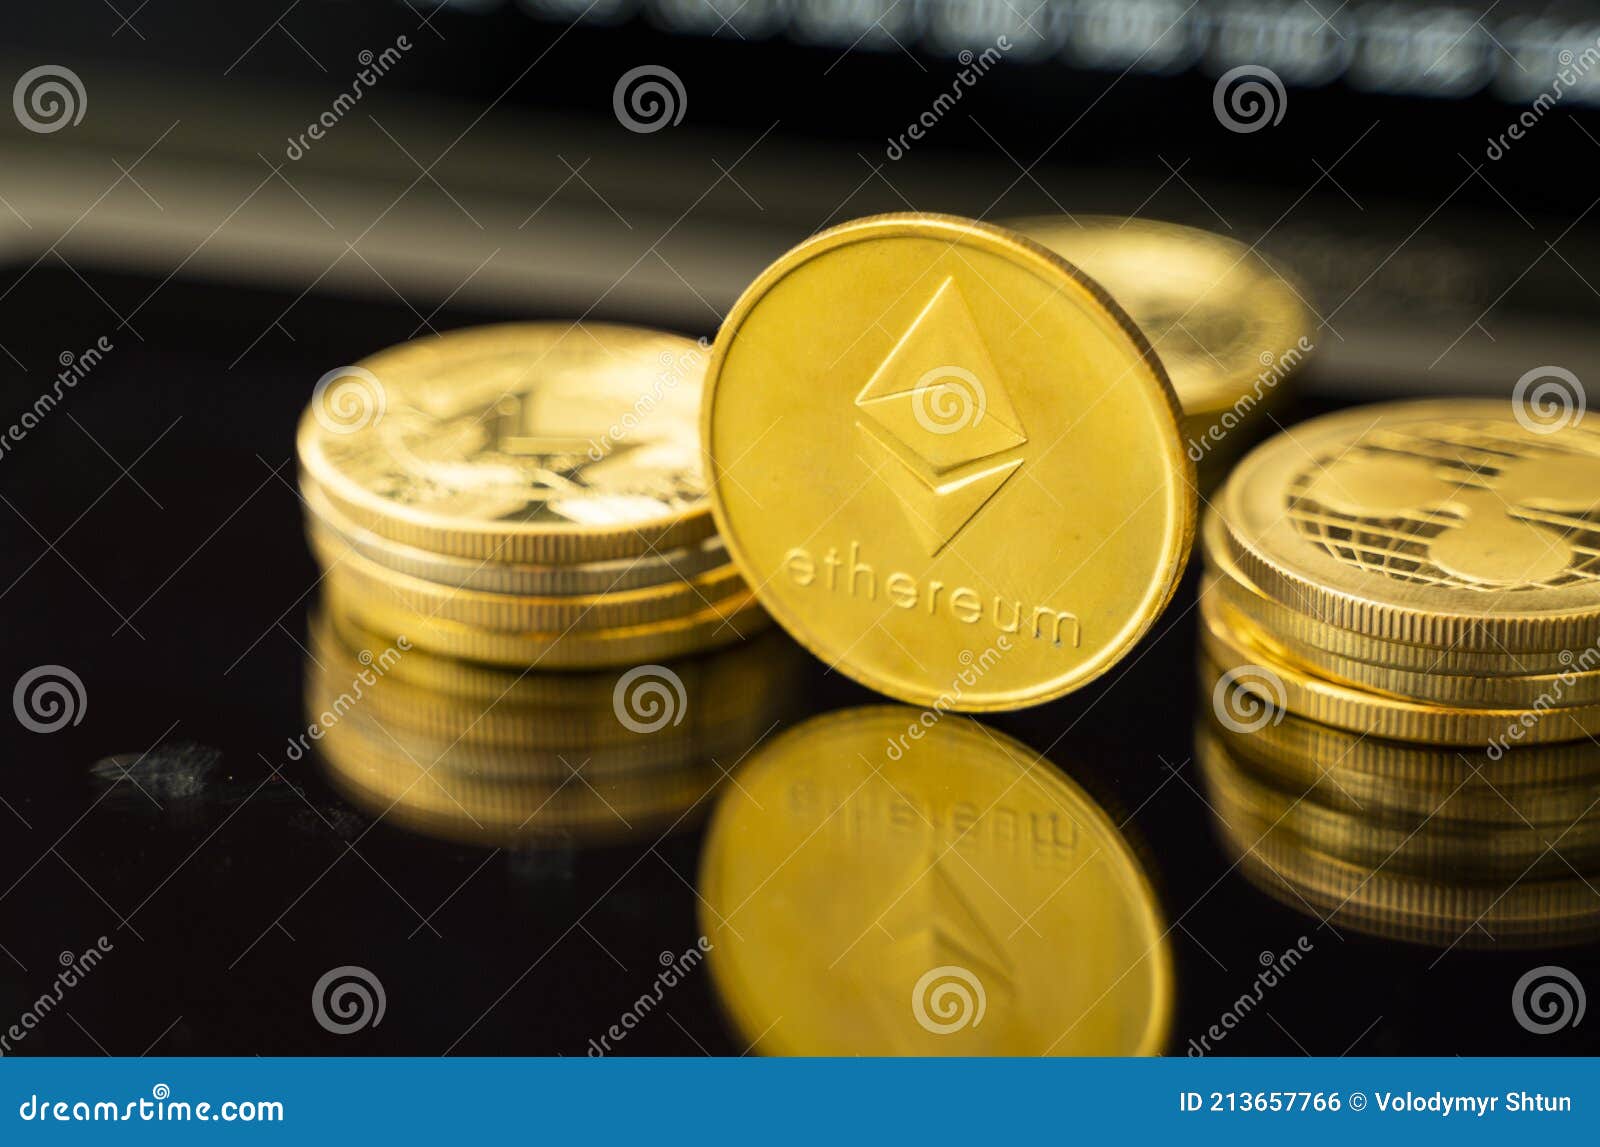 market coin exchange kriptovaliuta ir kaip iš to užsidirbti pinigų